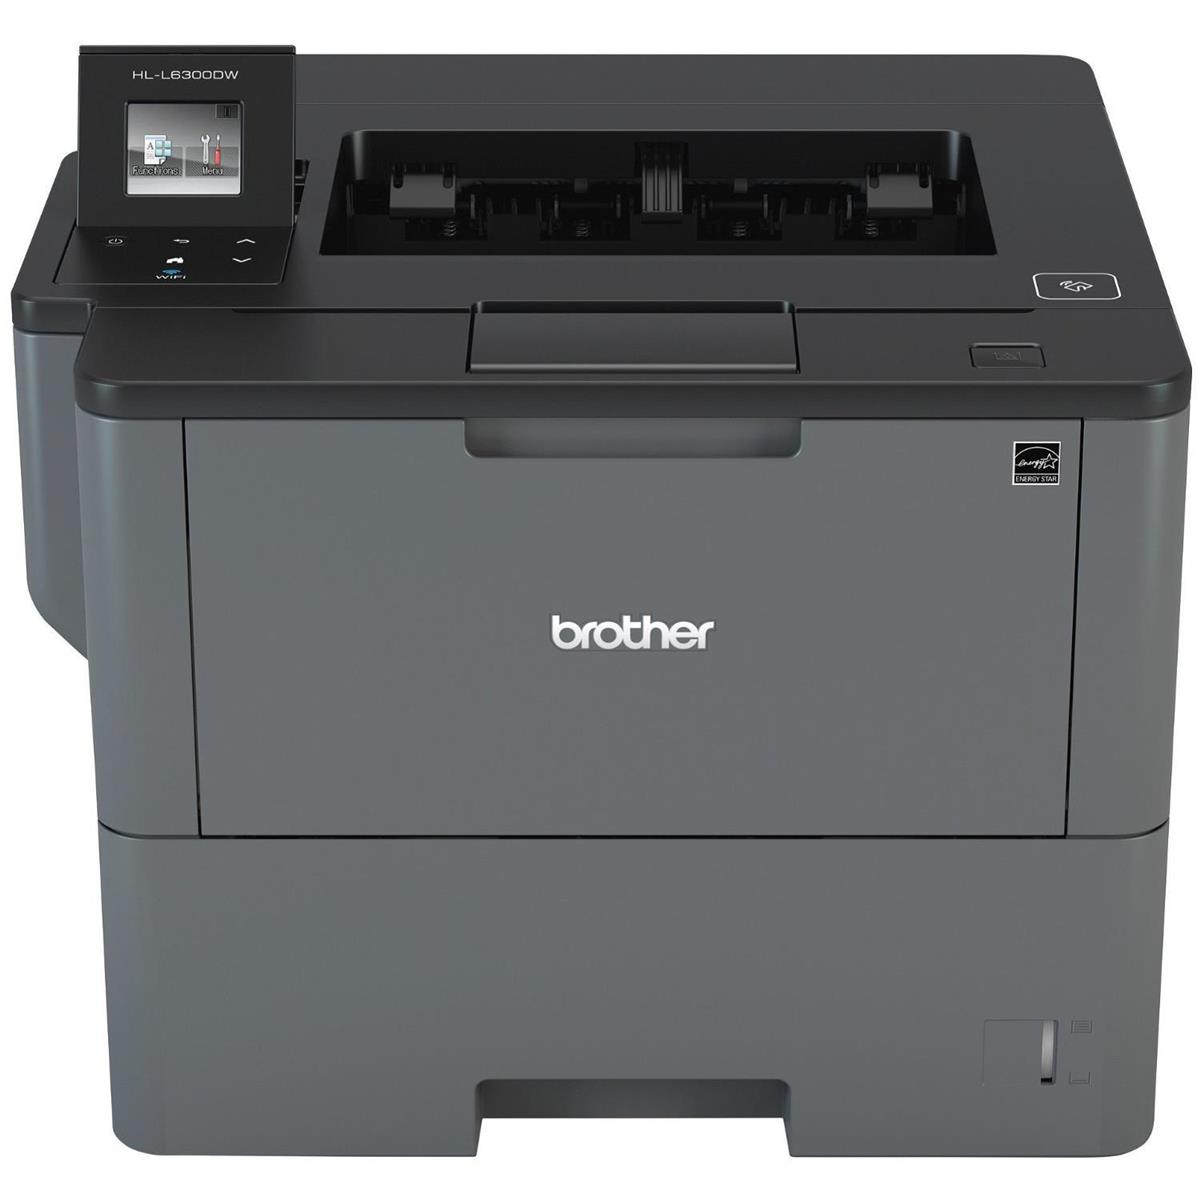 Image of Brother HL-L6300DW Monochrome Laser Printer